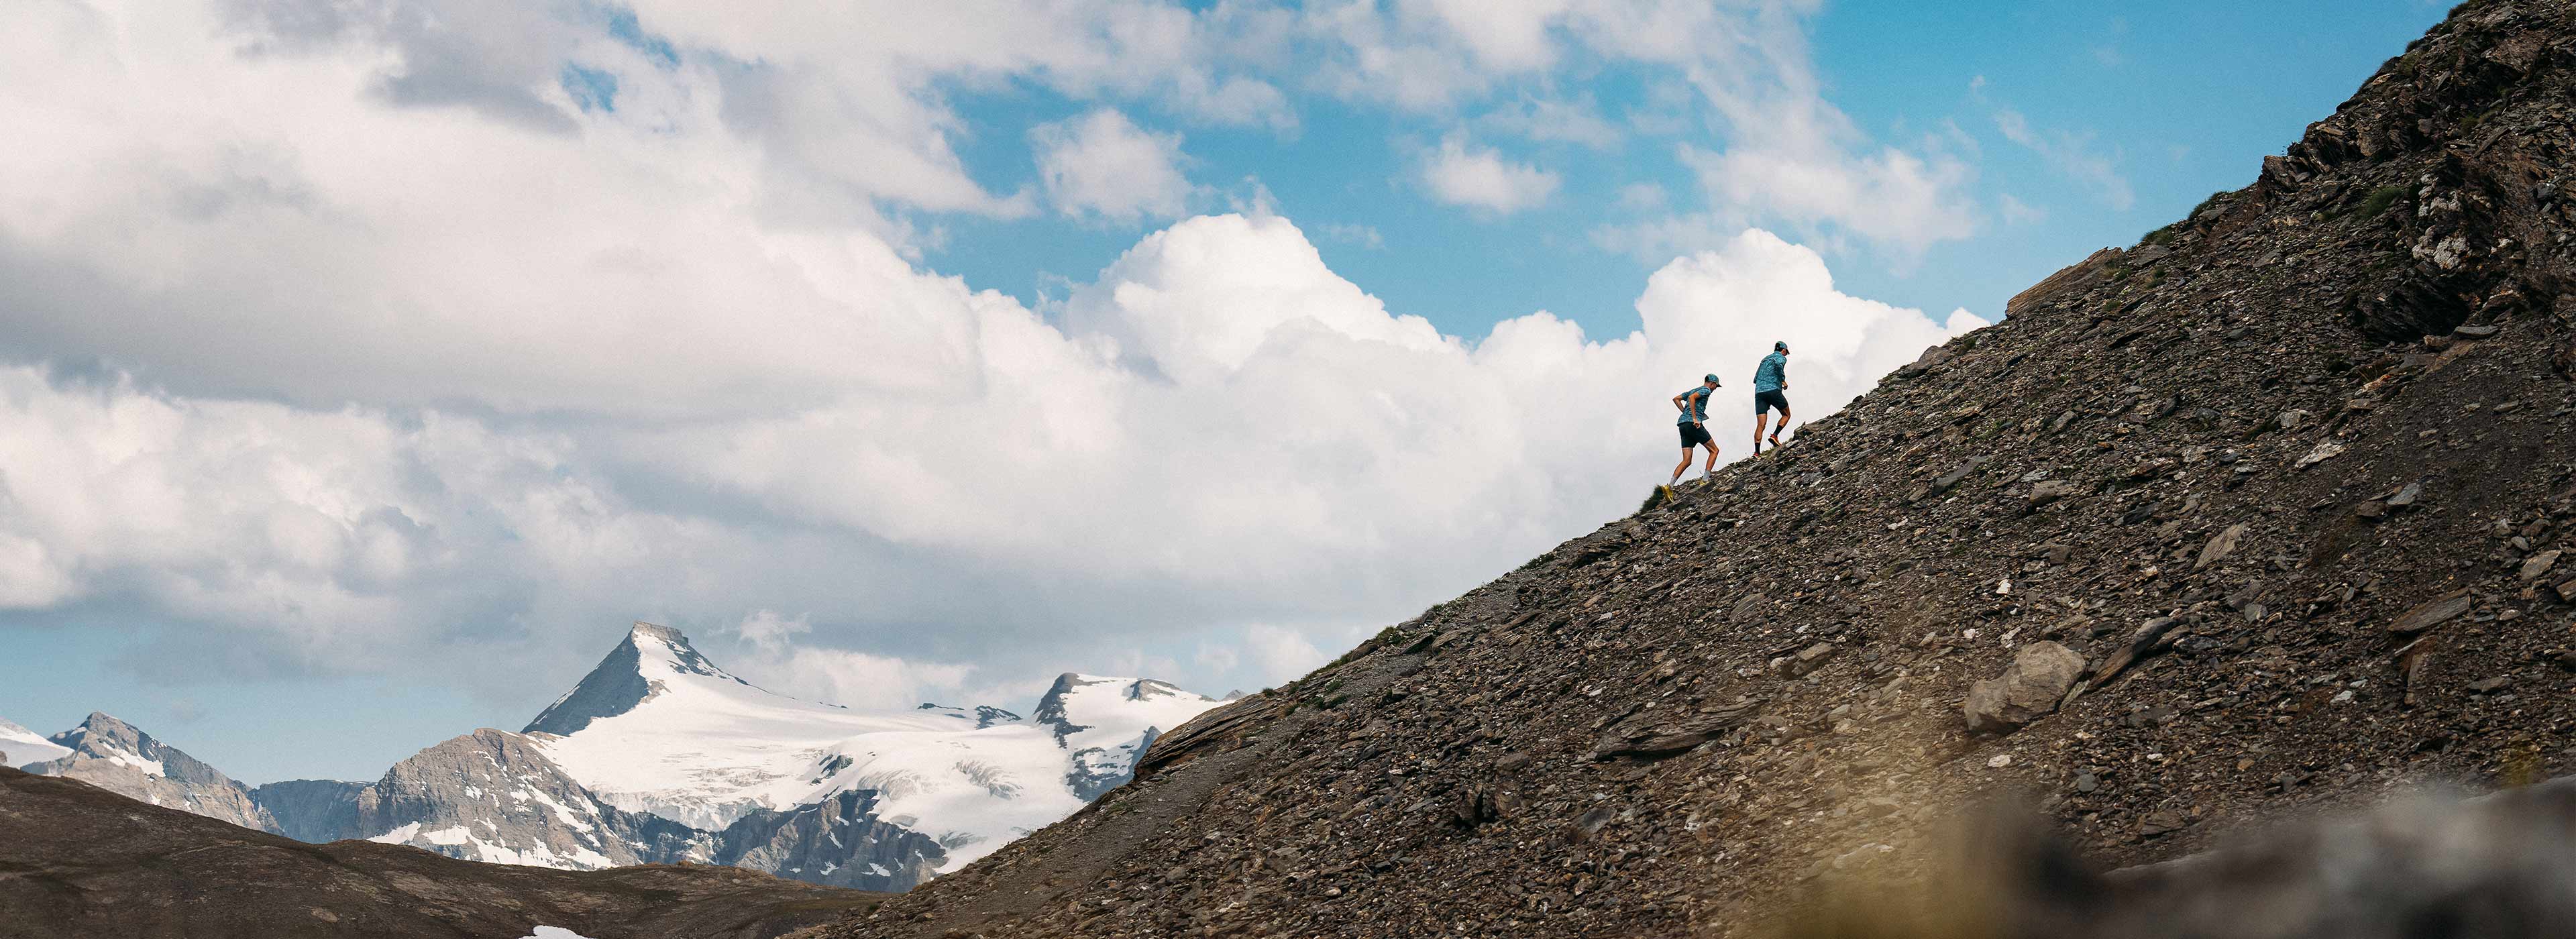 Team X Alpi running up a mountain